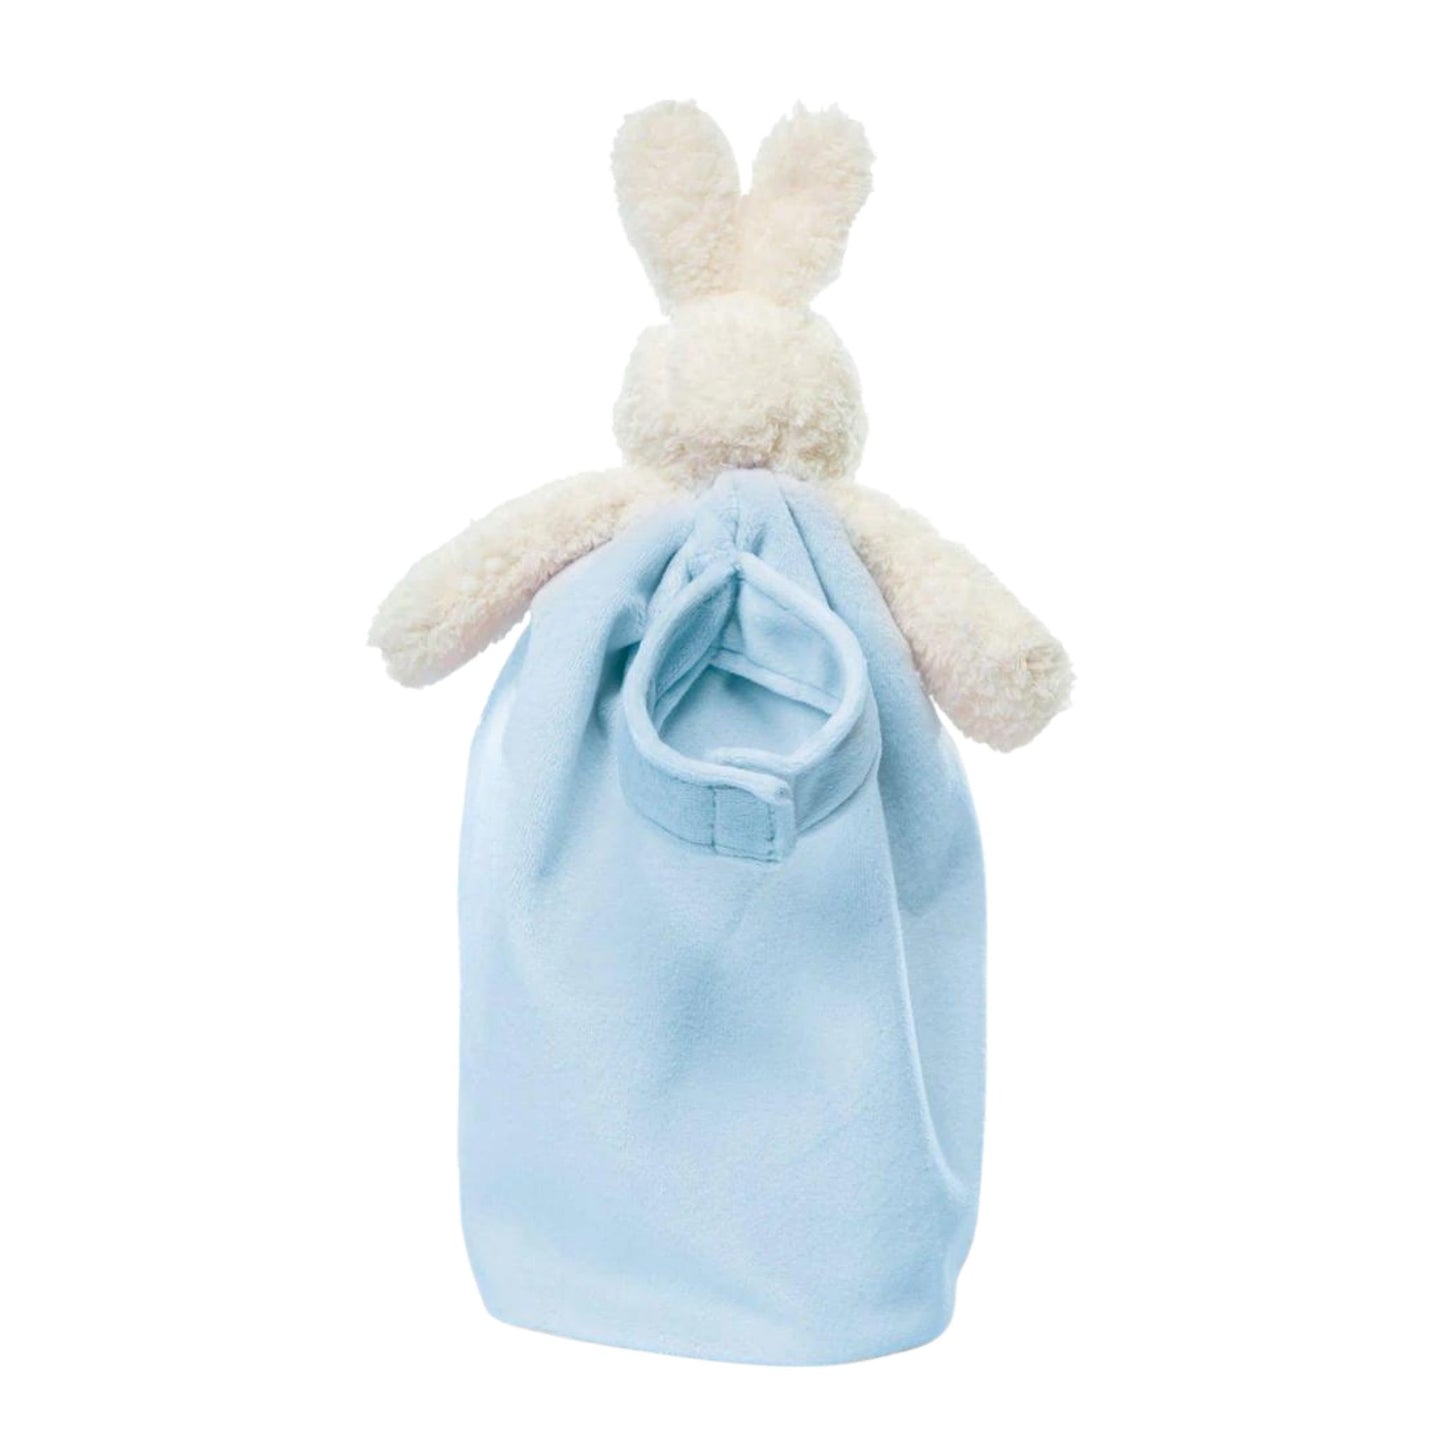 Bud Bunny Bye-Bye Buddy Comforter Blue